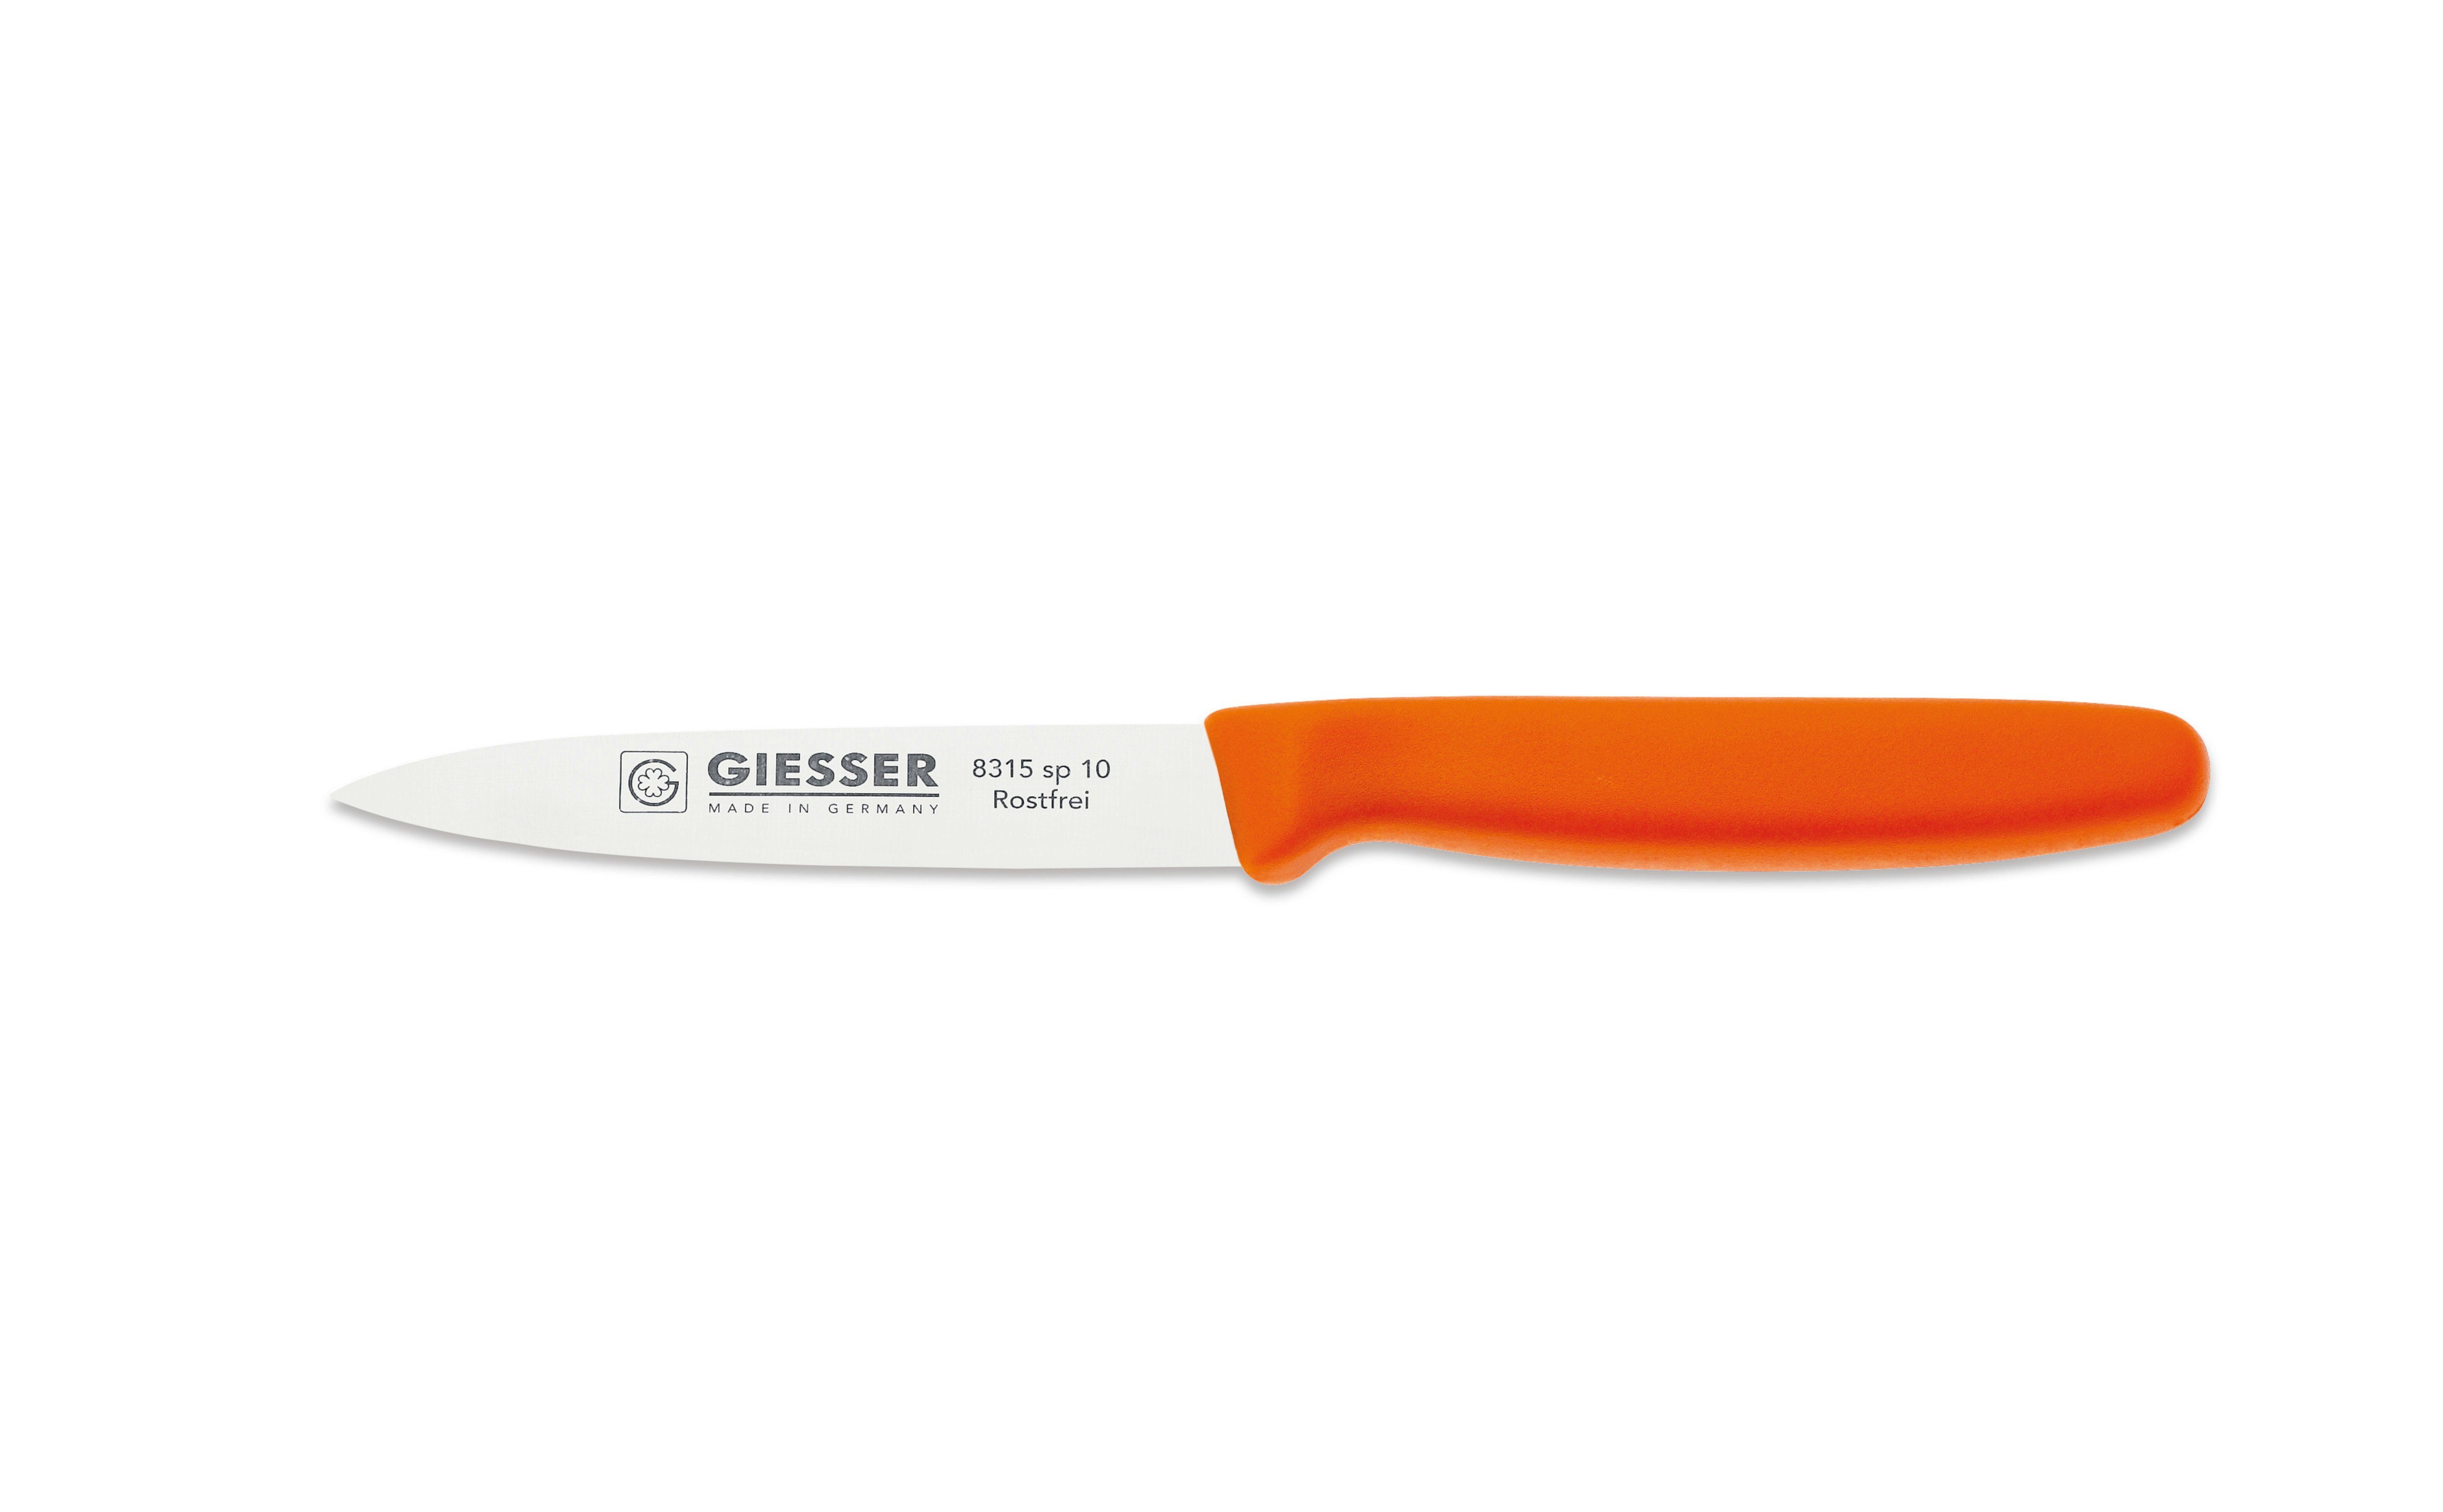 Giesser Messer Gemüsemesser Spickmesser Wellenschliff mit 8/10/12, Orange 3mm oder Küchenmesser ohne sp 8315